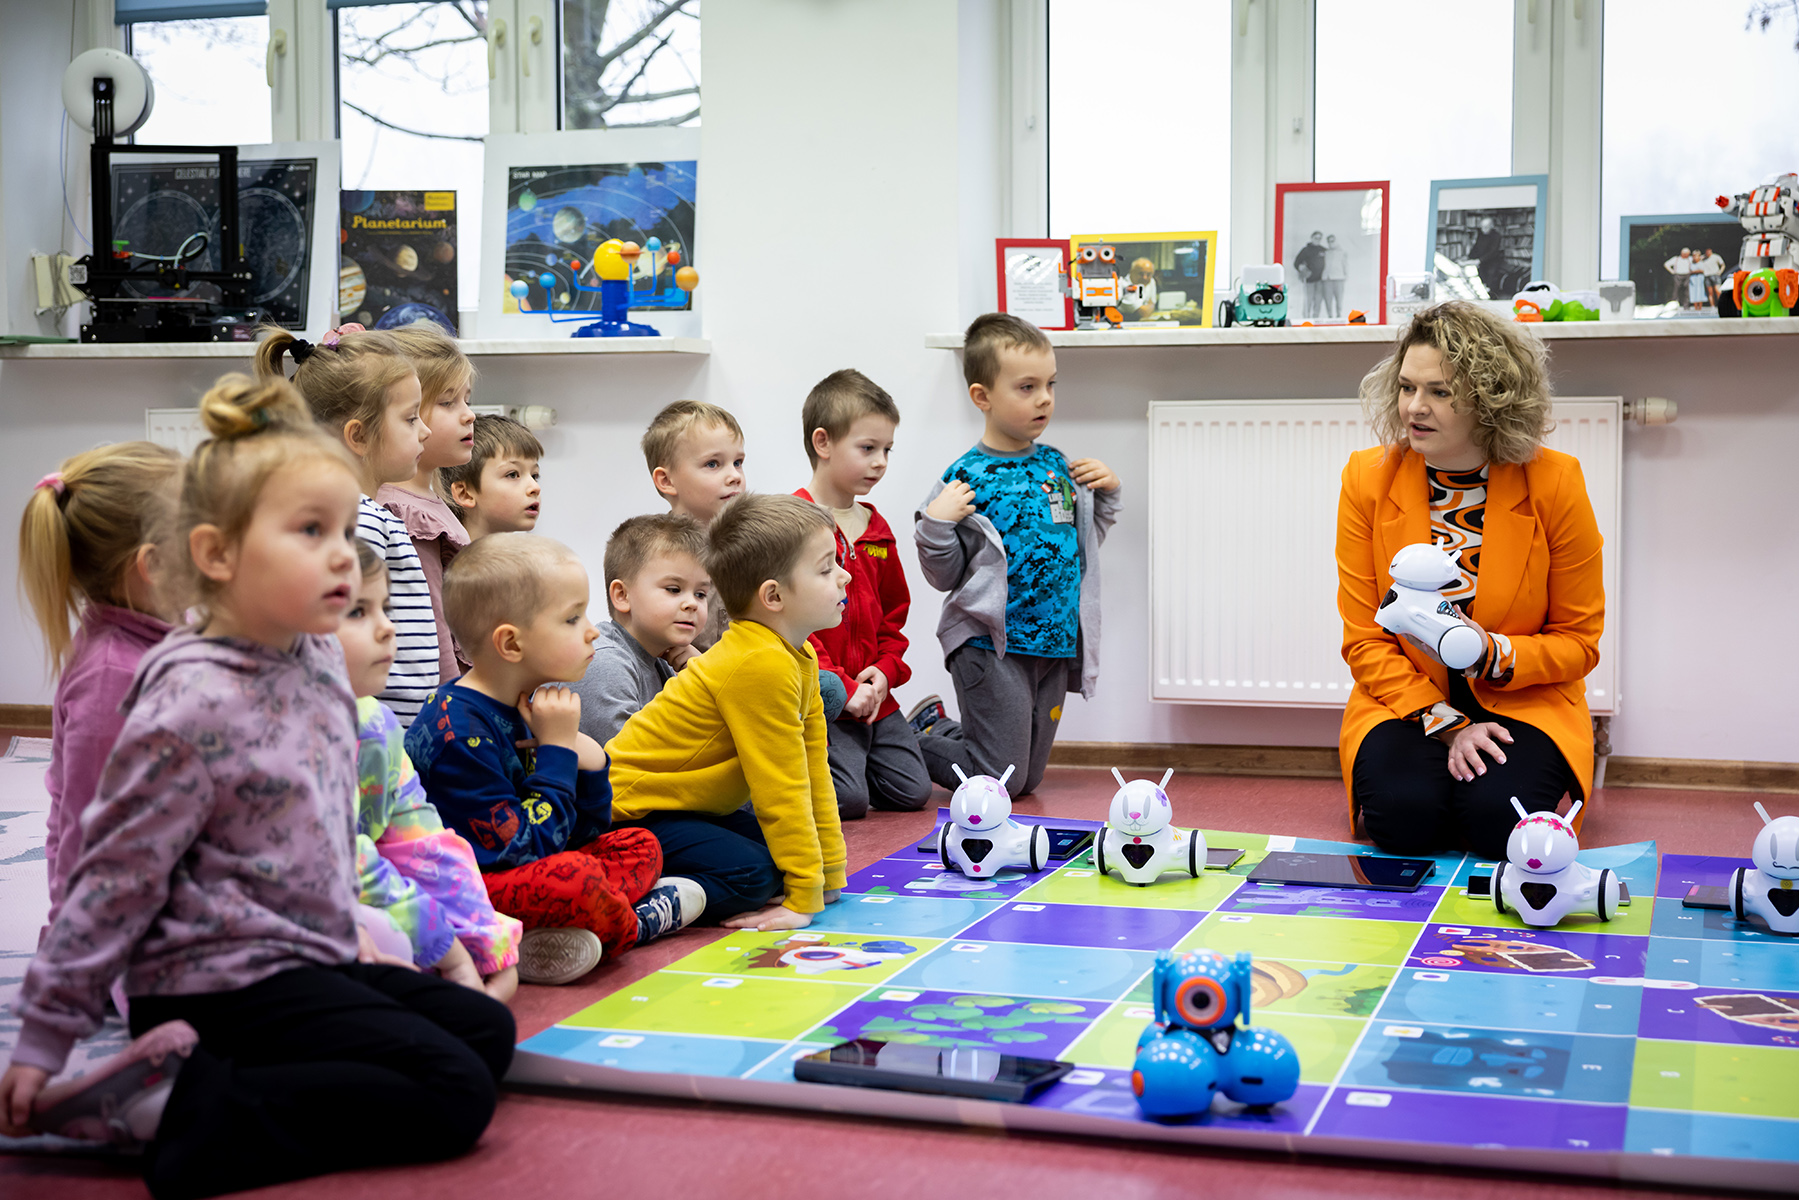 Pracownia Orange w Bulkowie. Przy macie dla robotów siedzi Natalia Maćkiewicz oraz grupa dzieci.